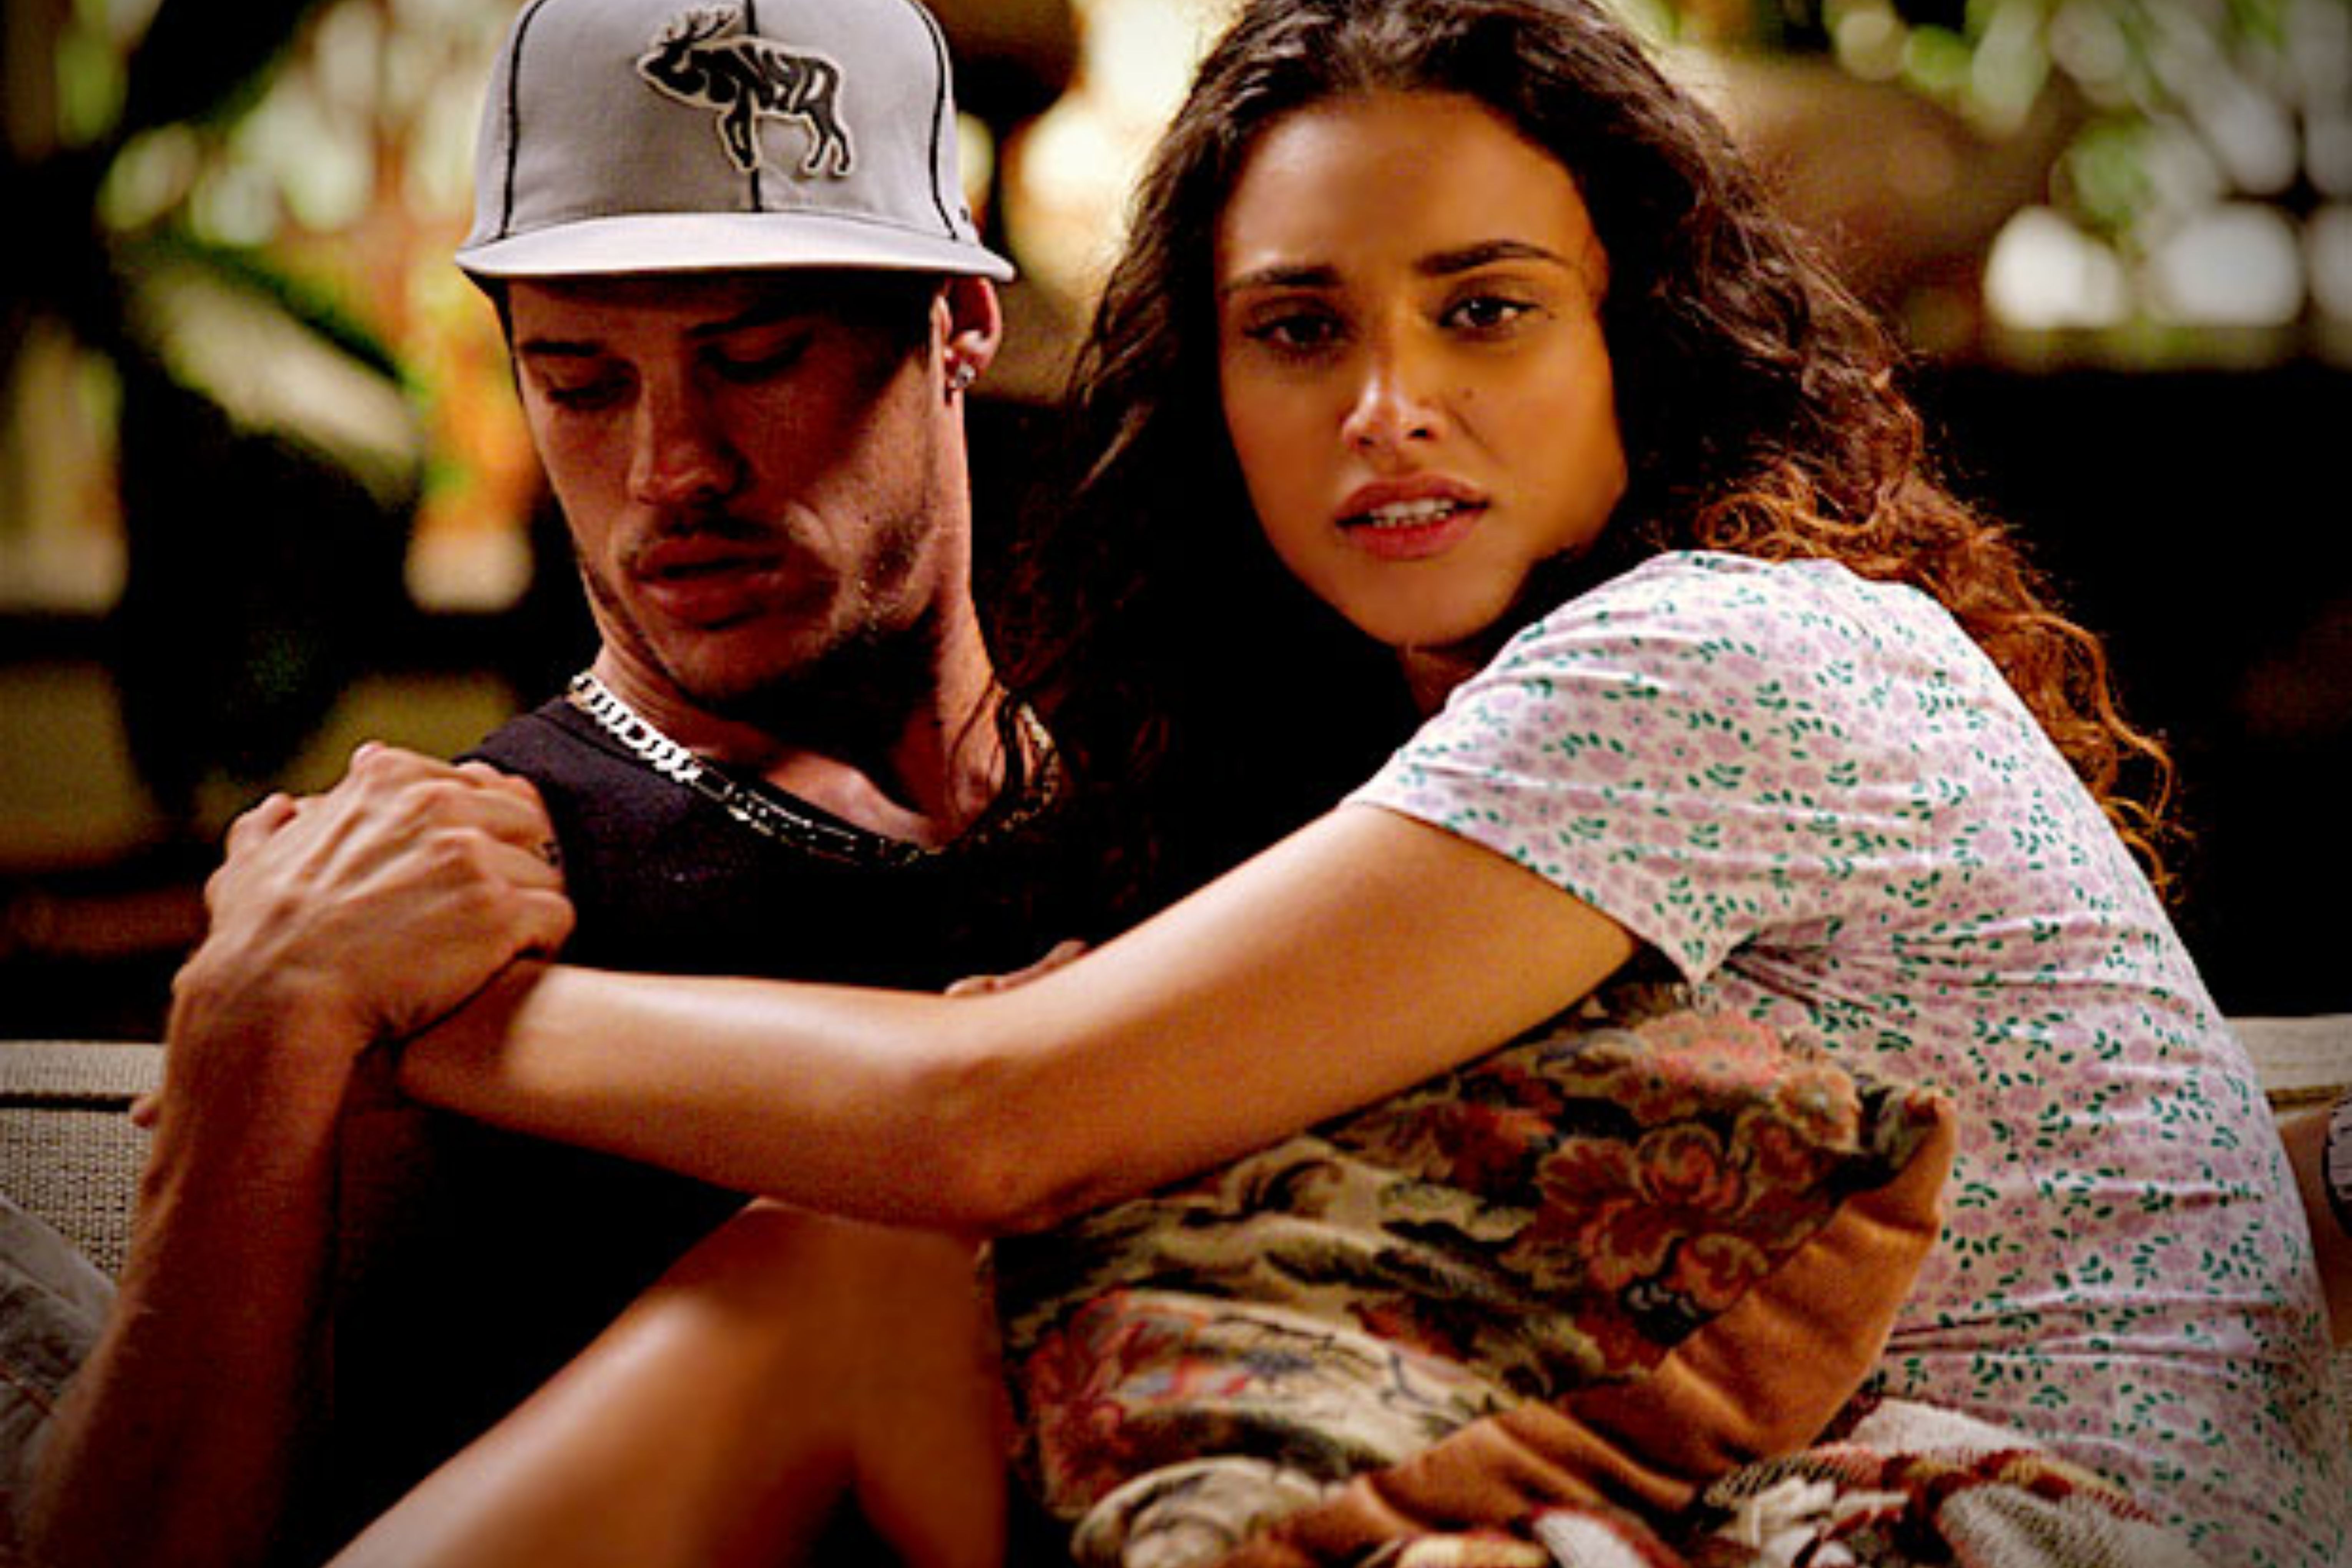  José Loreto e Débora Nascimento começaram o relacionamento durante a novela "Avenida Brasil" (2012) e ficaram juntos por 7 anos. Eles são pais da pequena Bella TV Globo